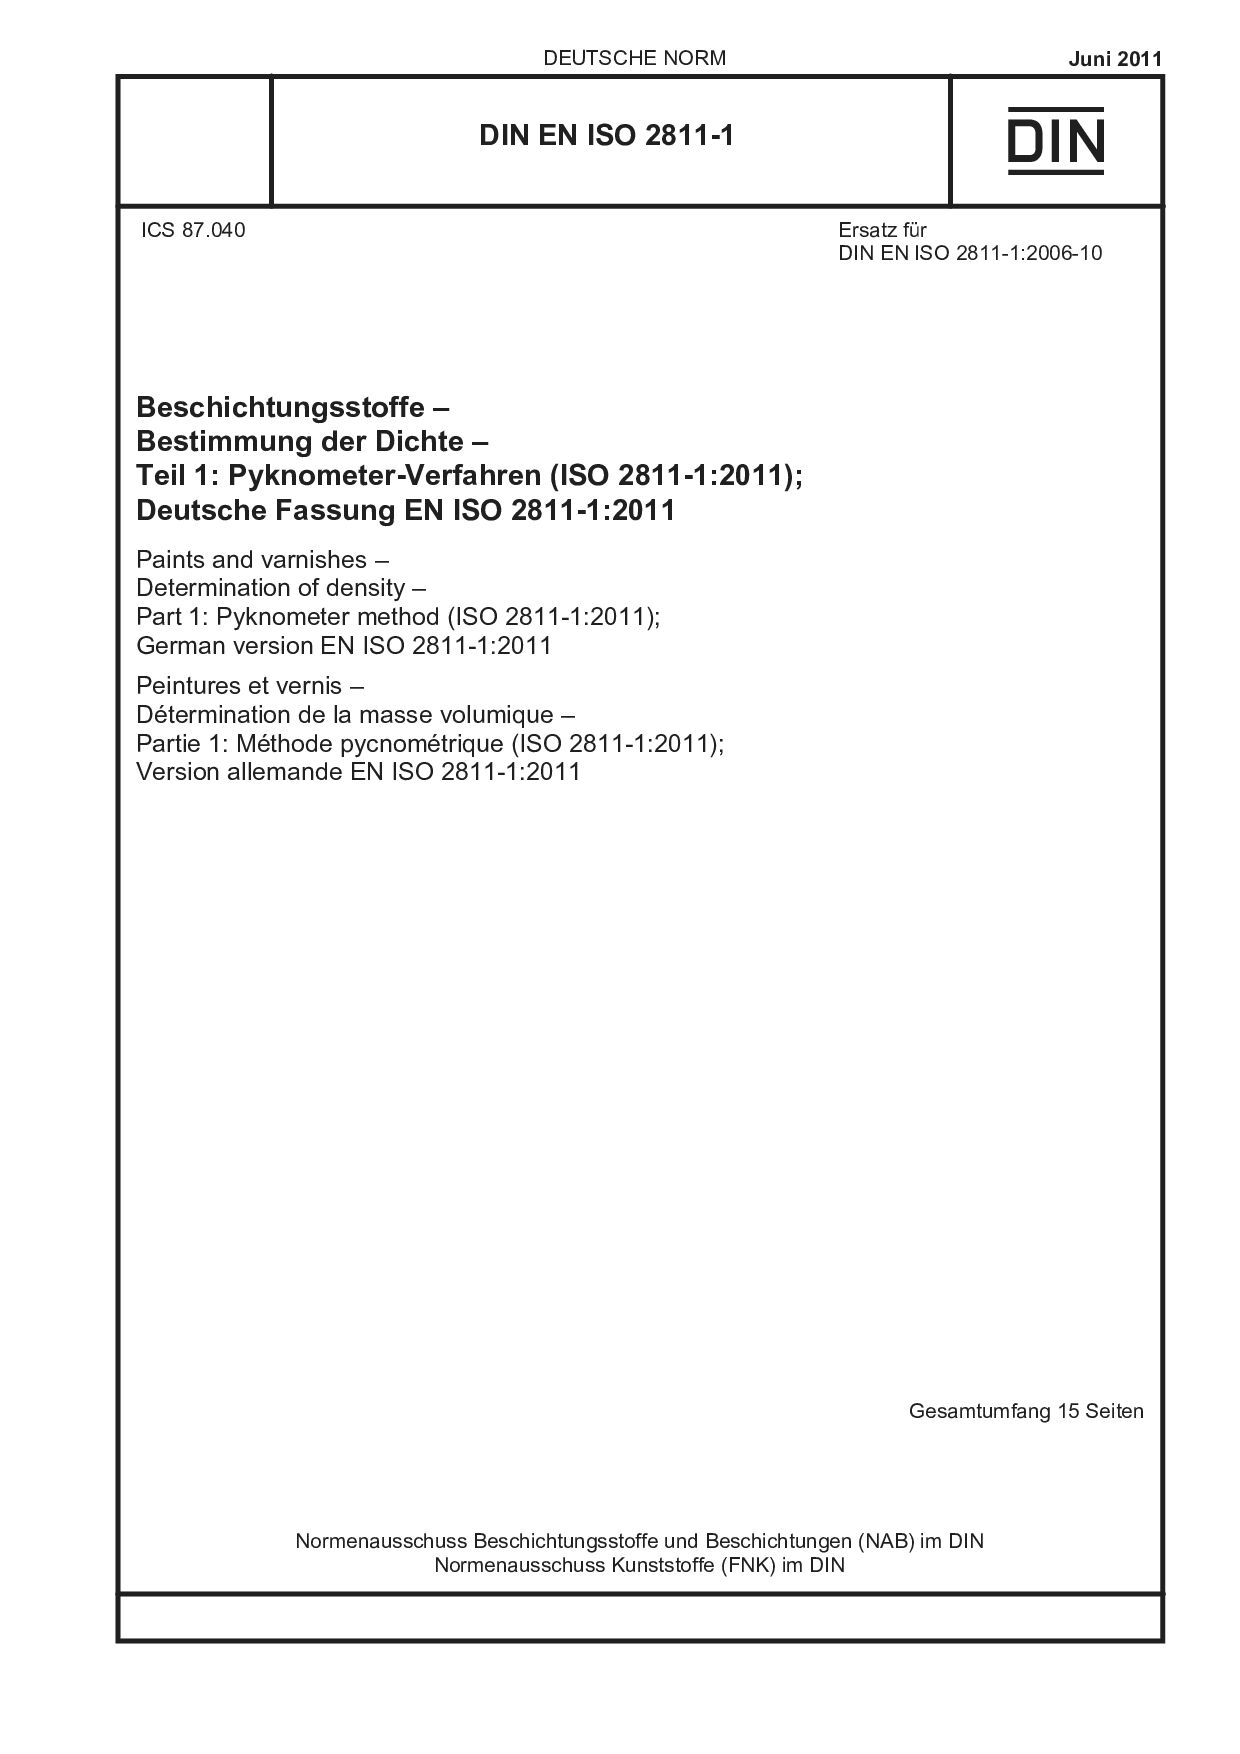 DIN EN ISO 2811-1:2011